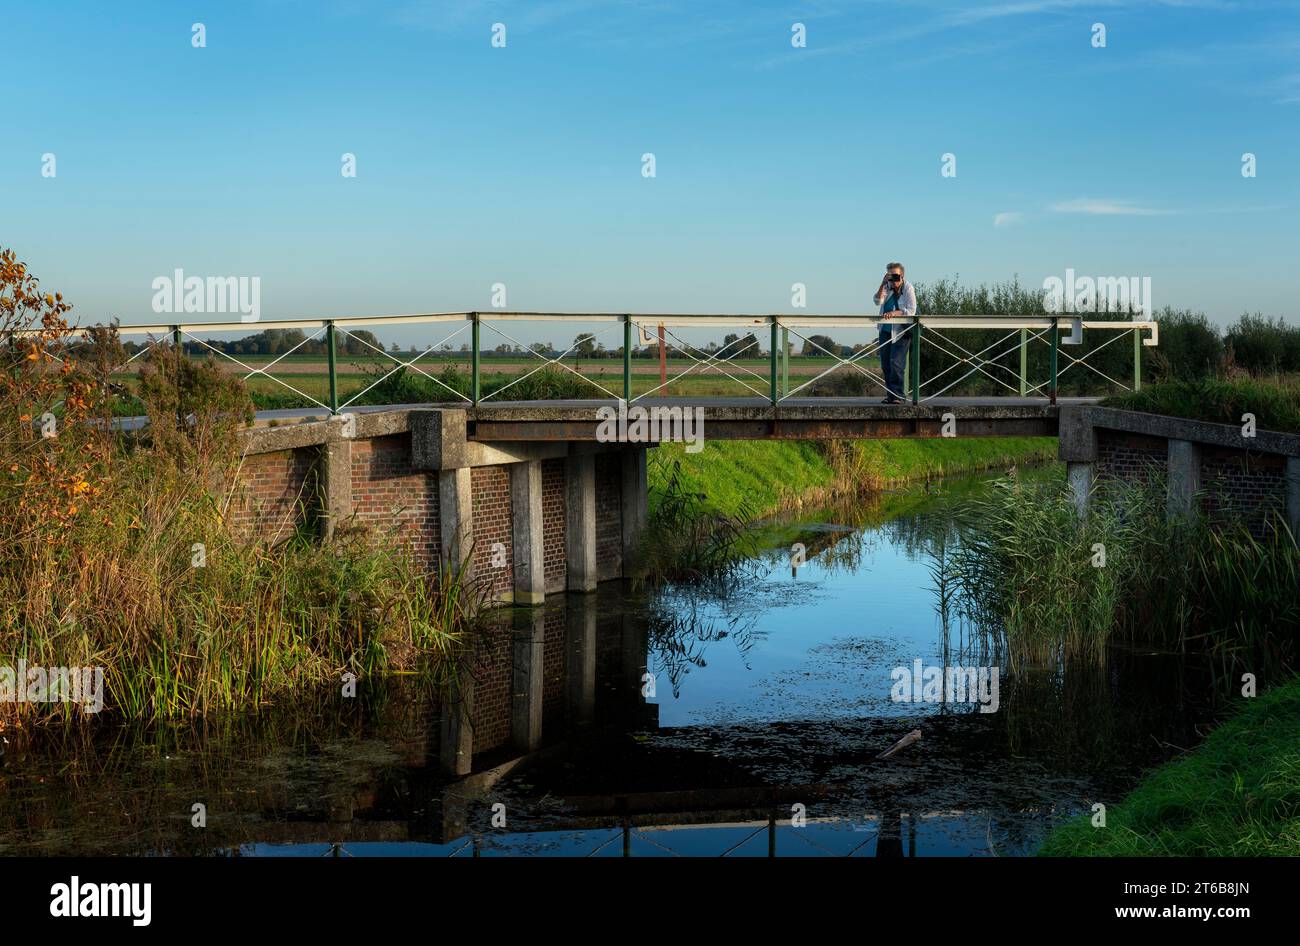 Noorddijk, Groningen, 10-20-2018. Ein Fotograf auf der Brücke über den Zuidwendinger Kanal in Noorddijk am Stadtrand von Groningen. Stockfoto